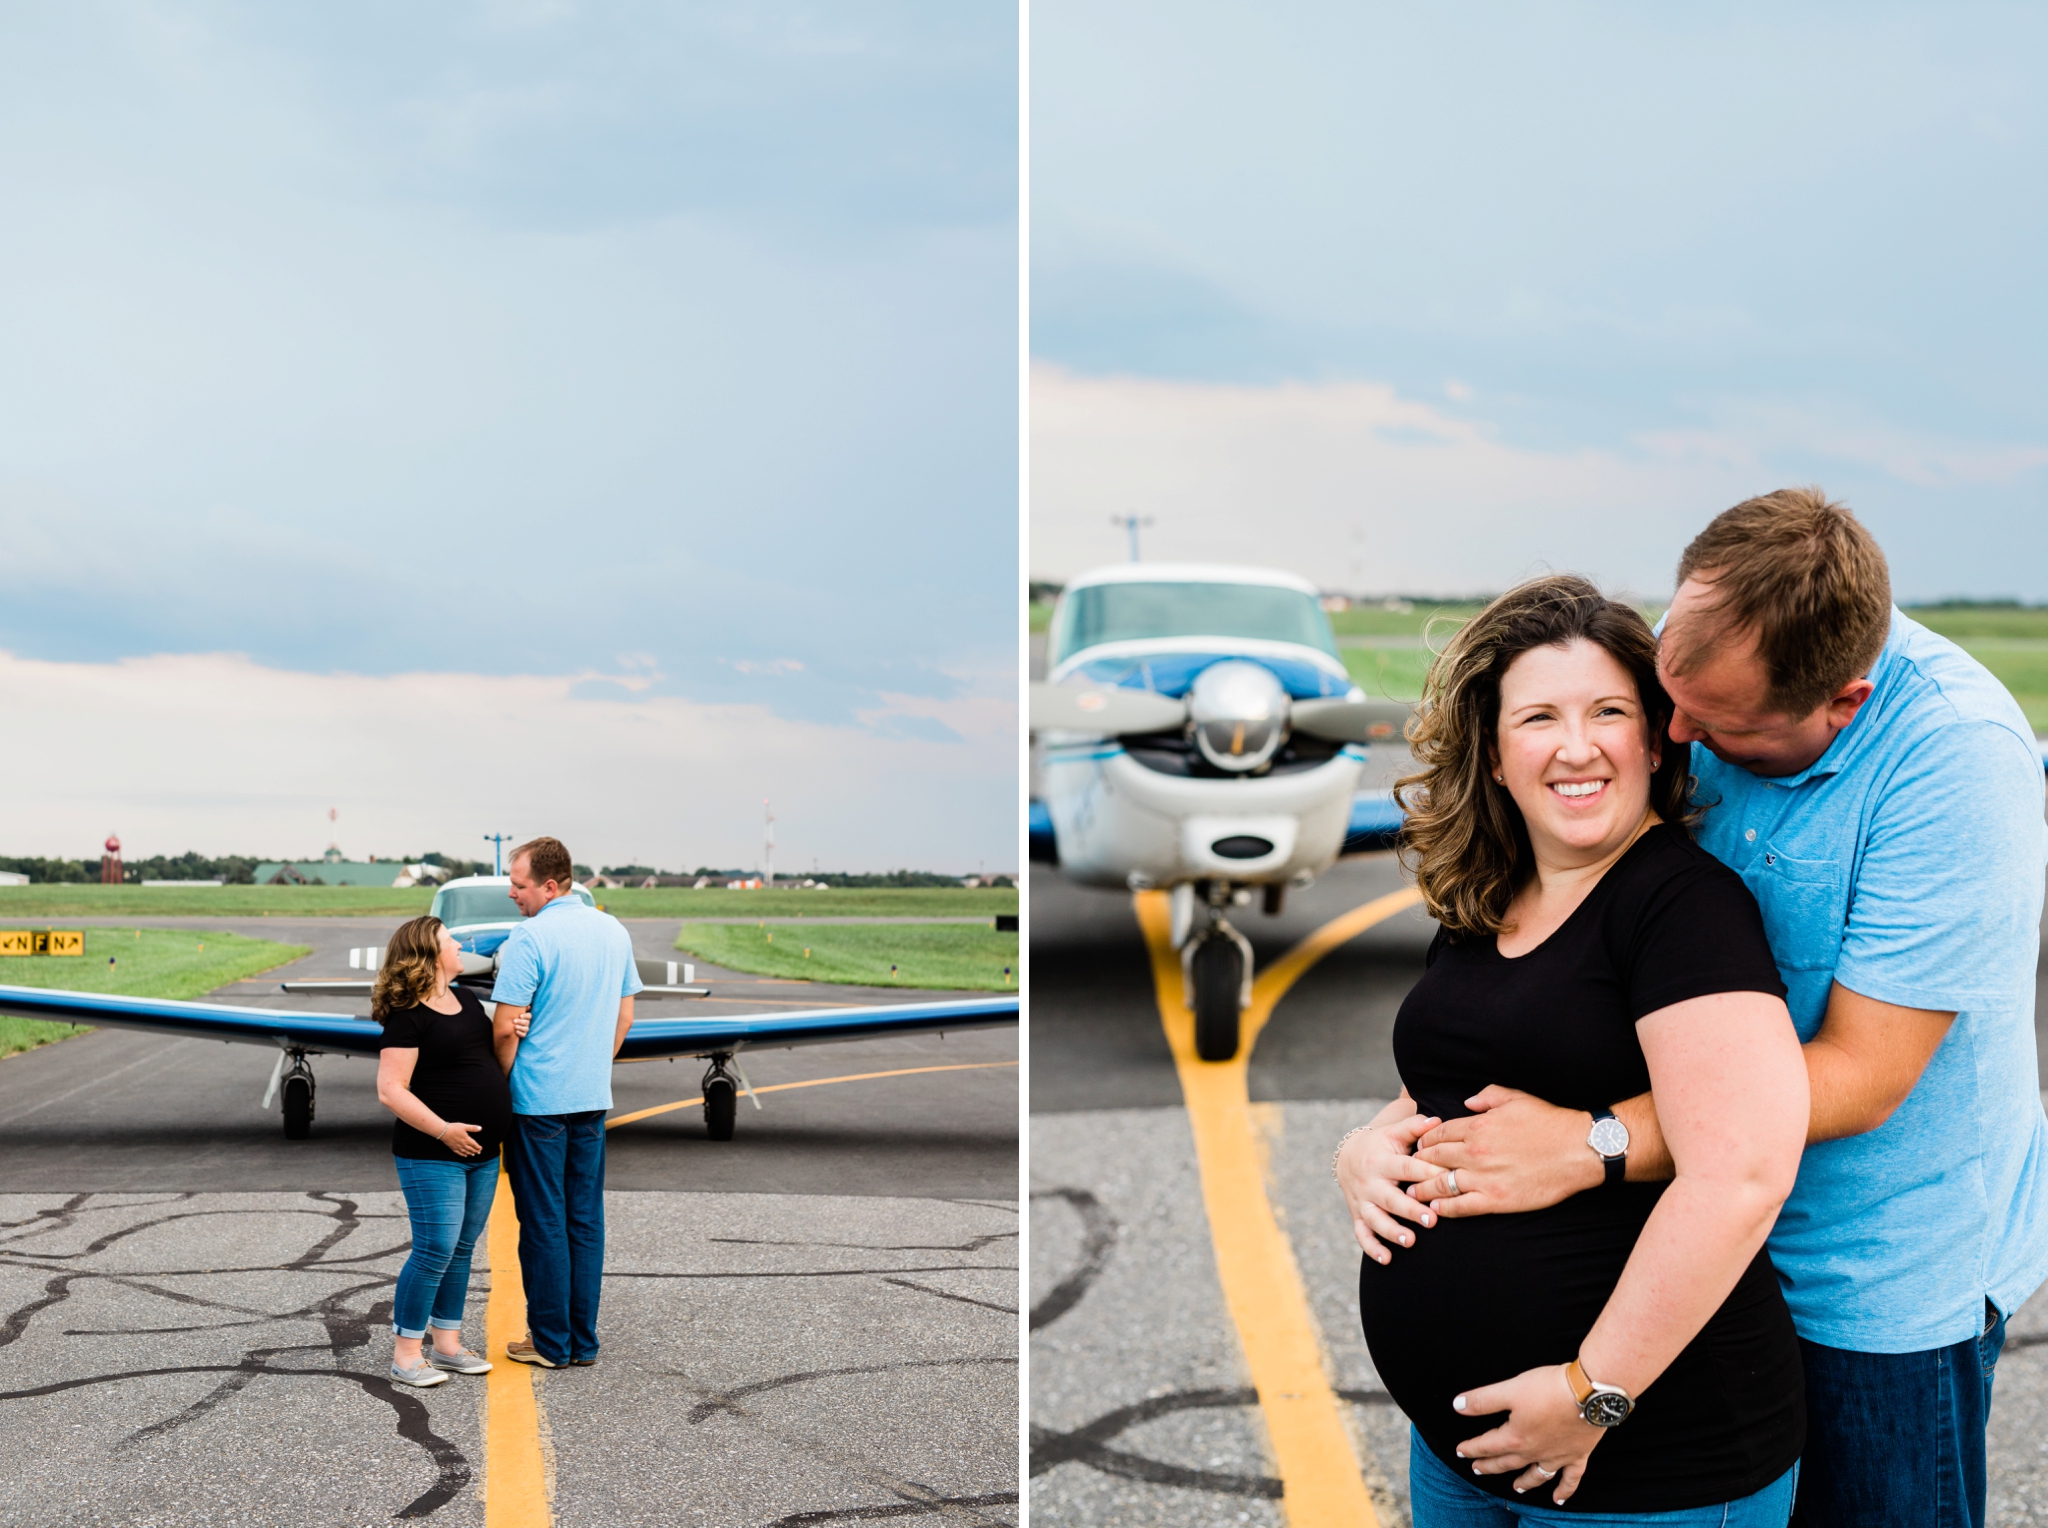 Emily Grace Photography, Lancaster PA Maternity Photographer, Lancaster Airport Maternity Photos, Lititz PA Maternity Photos, Airplane Maternity Photos